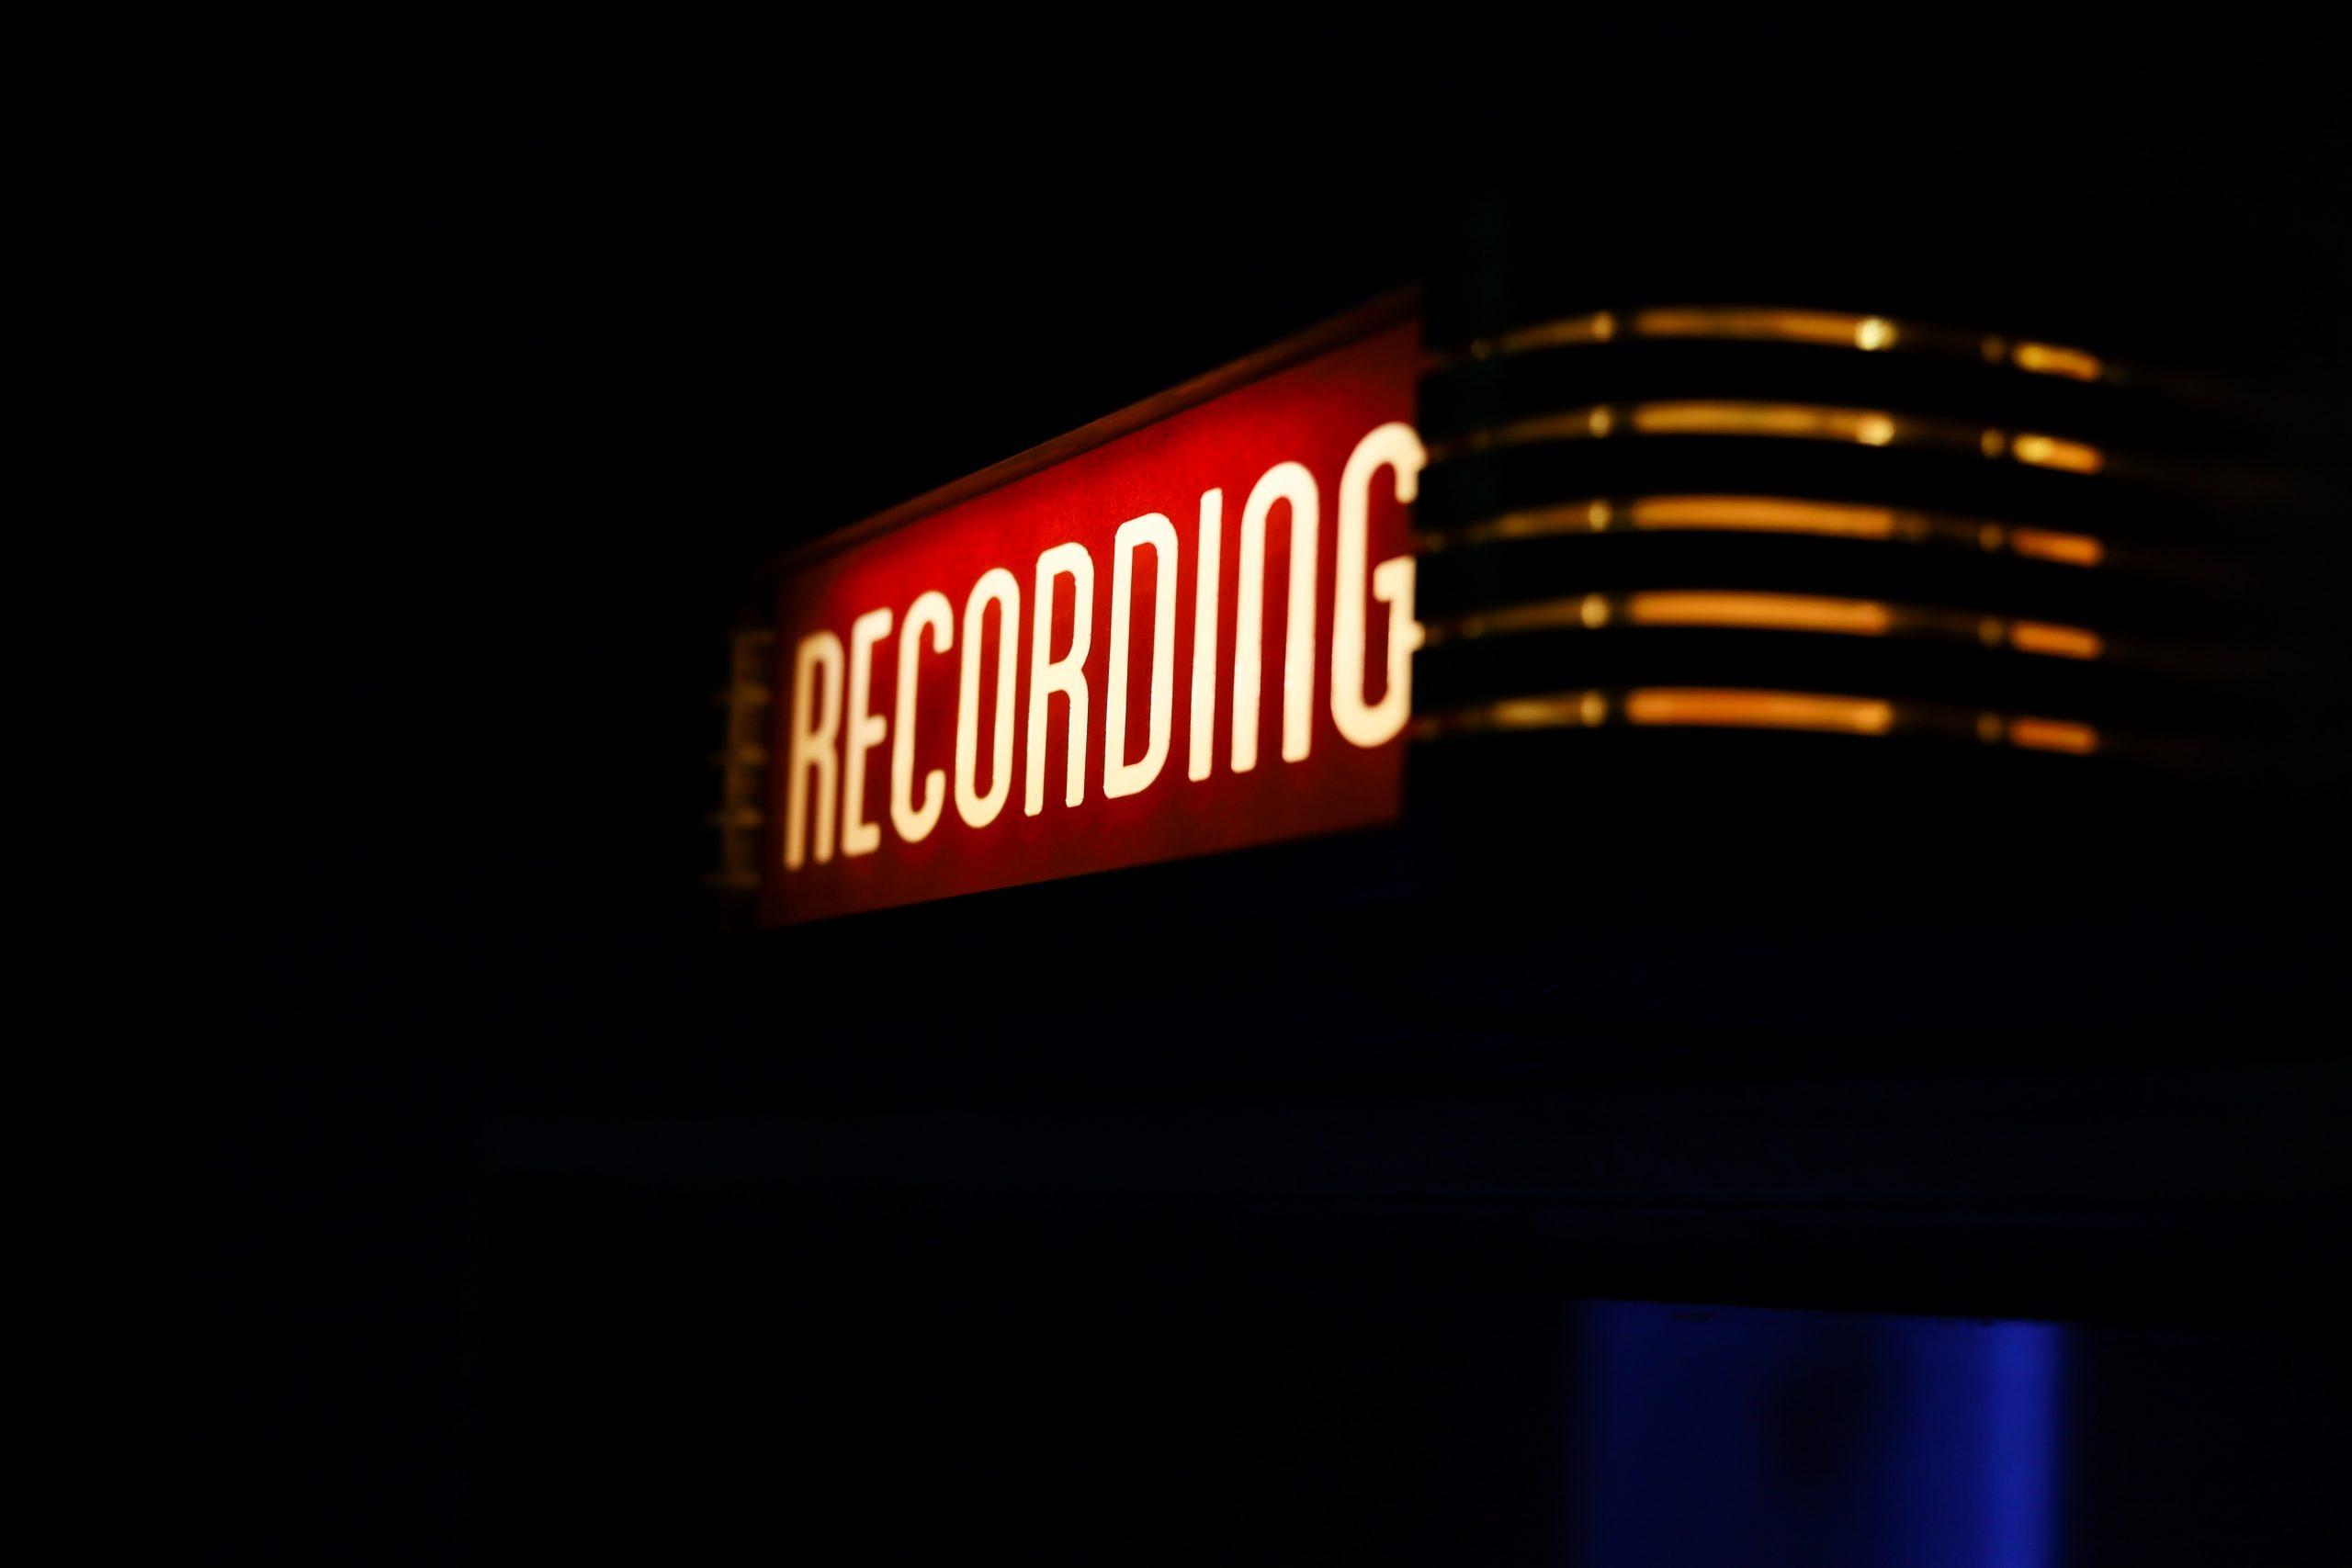 Leuchtschild Recording